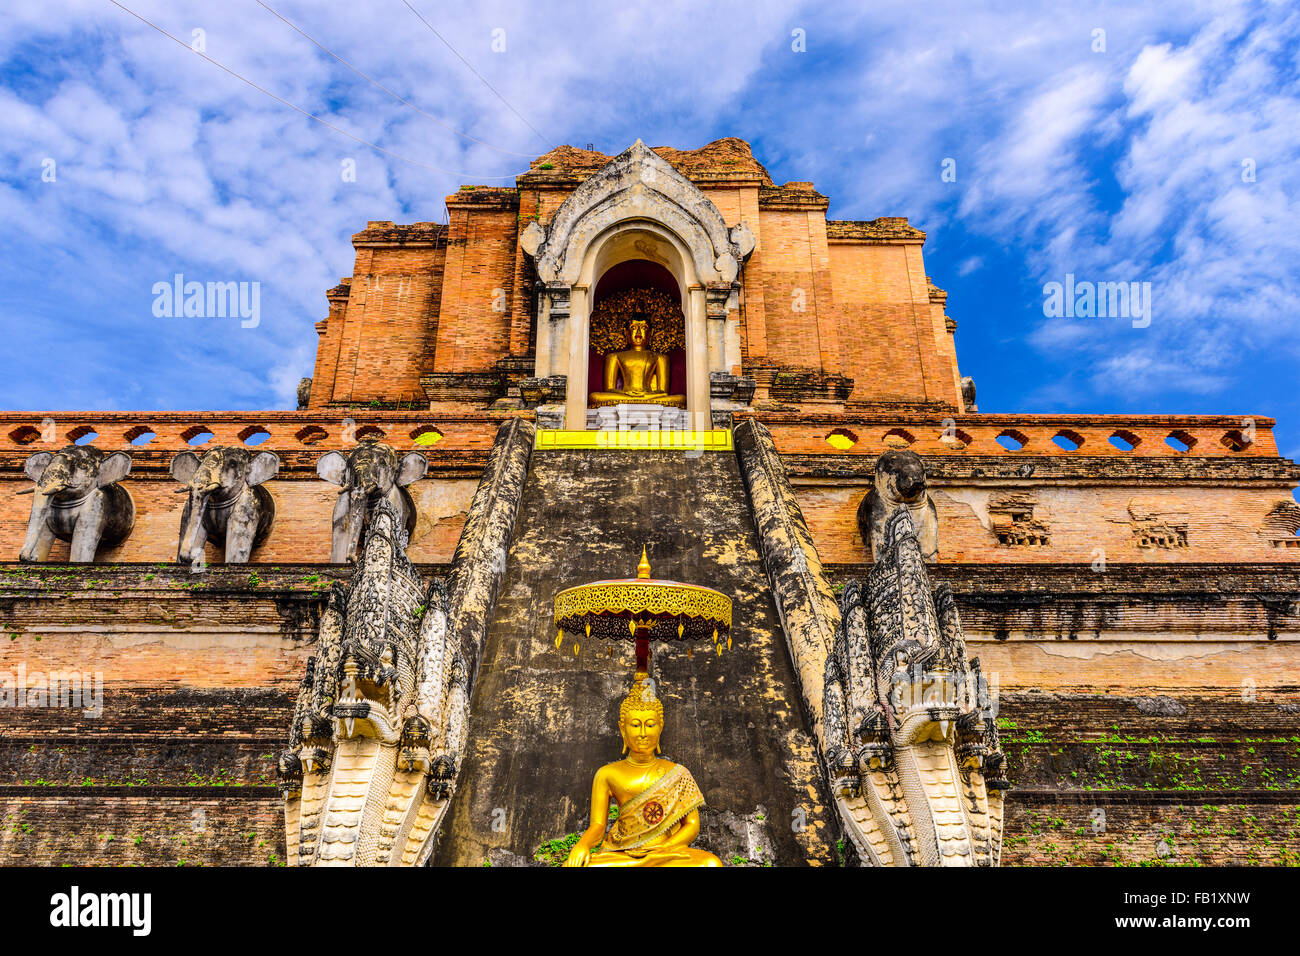 Chiang Mai, Thailand at Wat Chedi Luang. Stock Photo